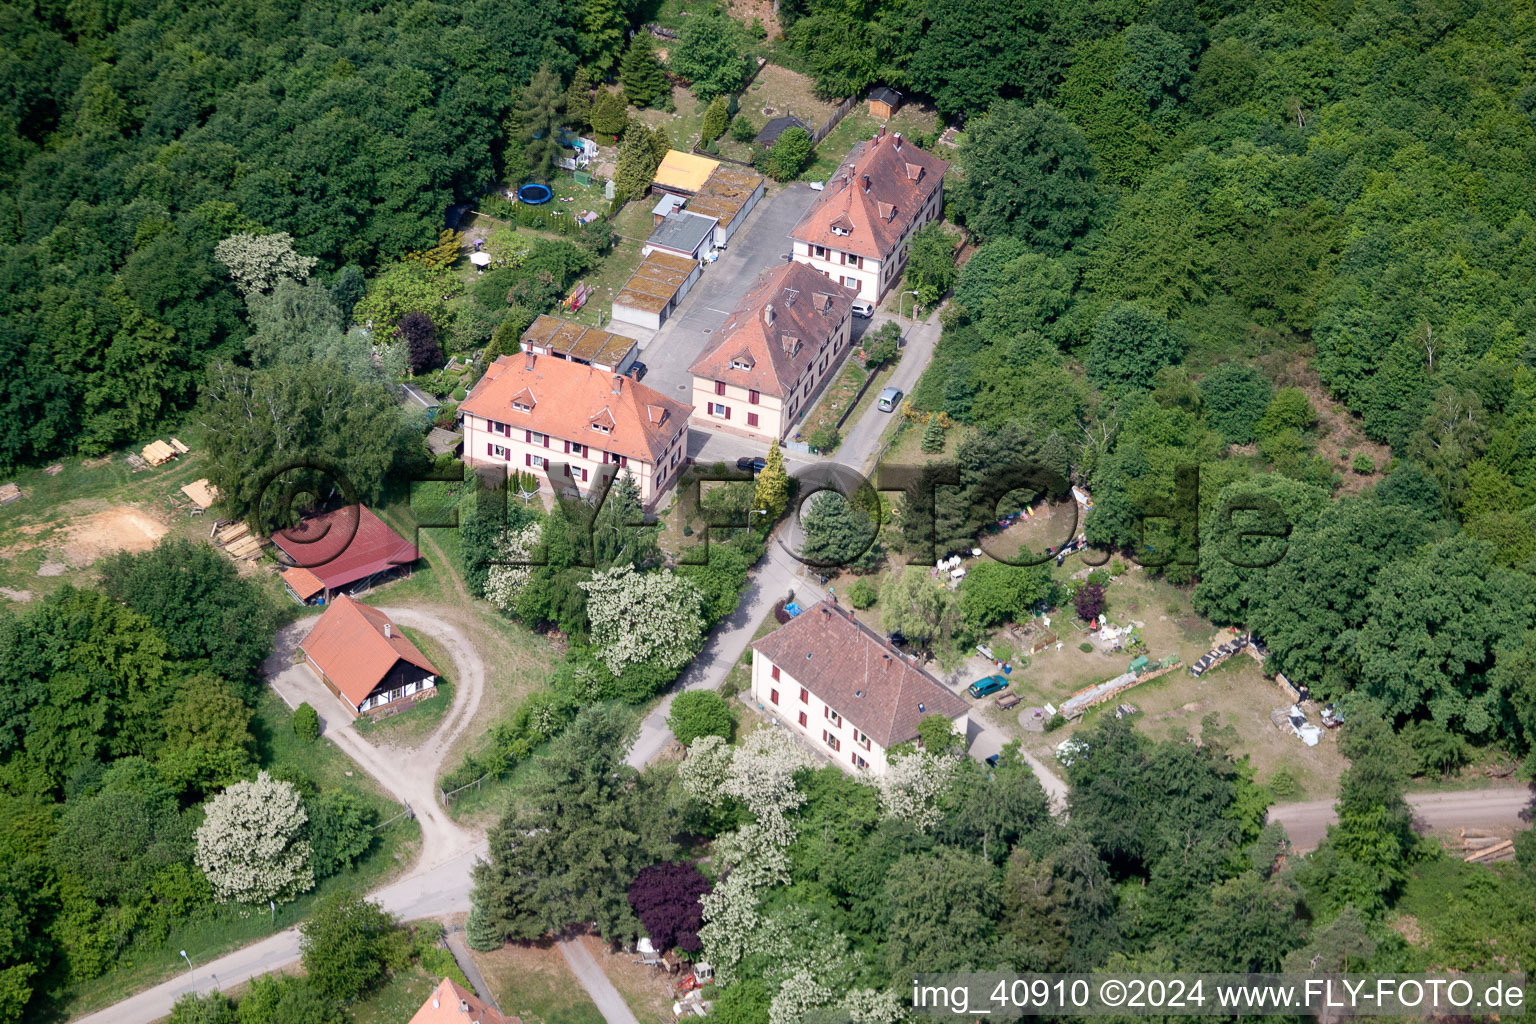 Scheibenhardt (Pfalz), Seufzerallee 4 im Bundesland Rheinland-Pfalz, Deutschland aus der Drohnenperspektive